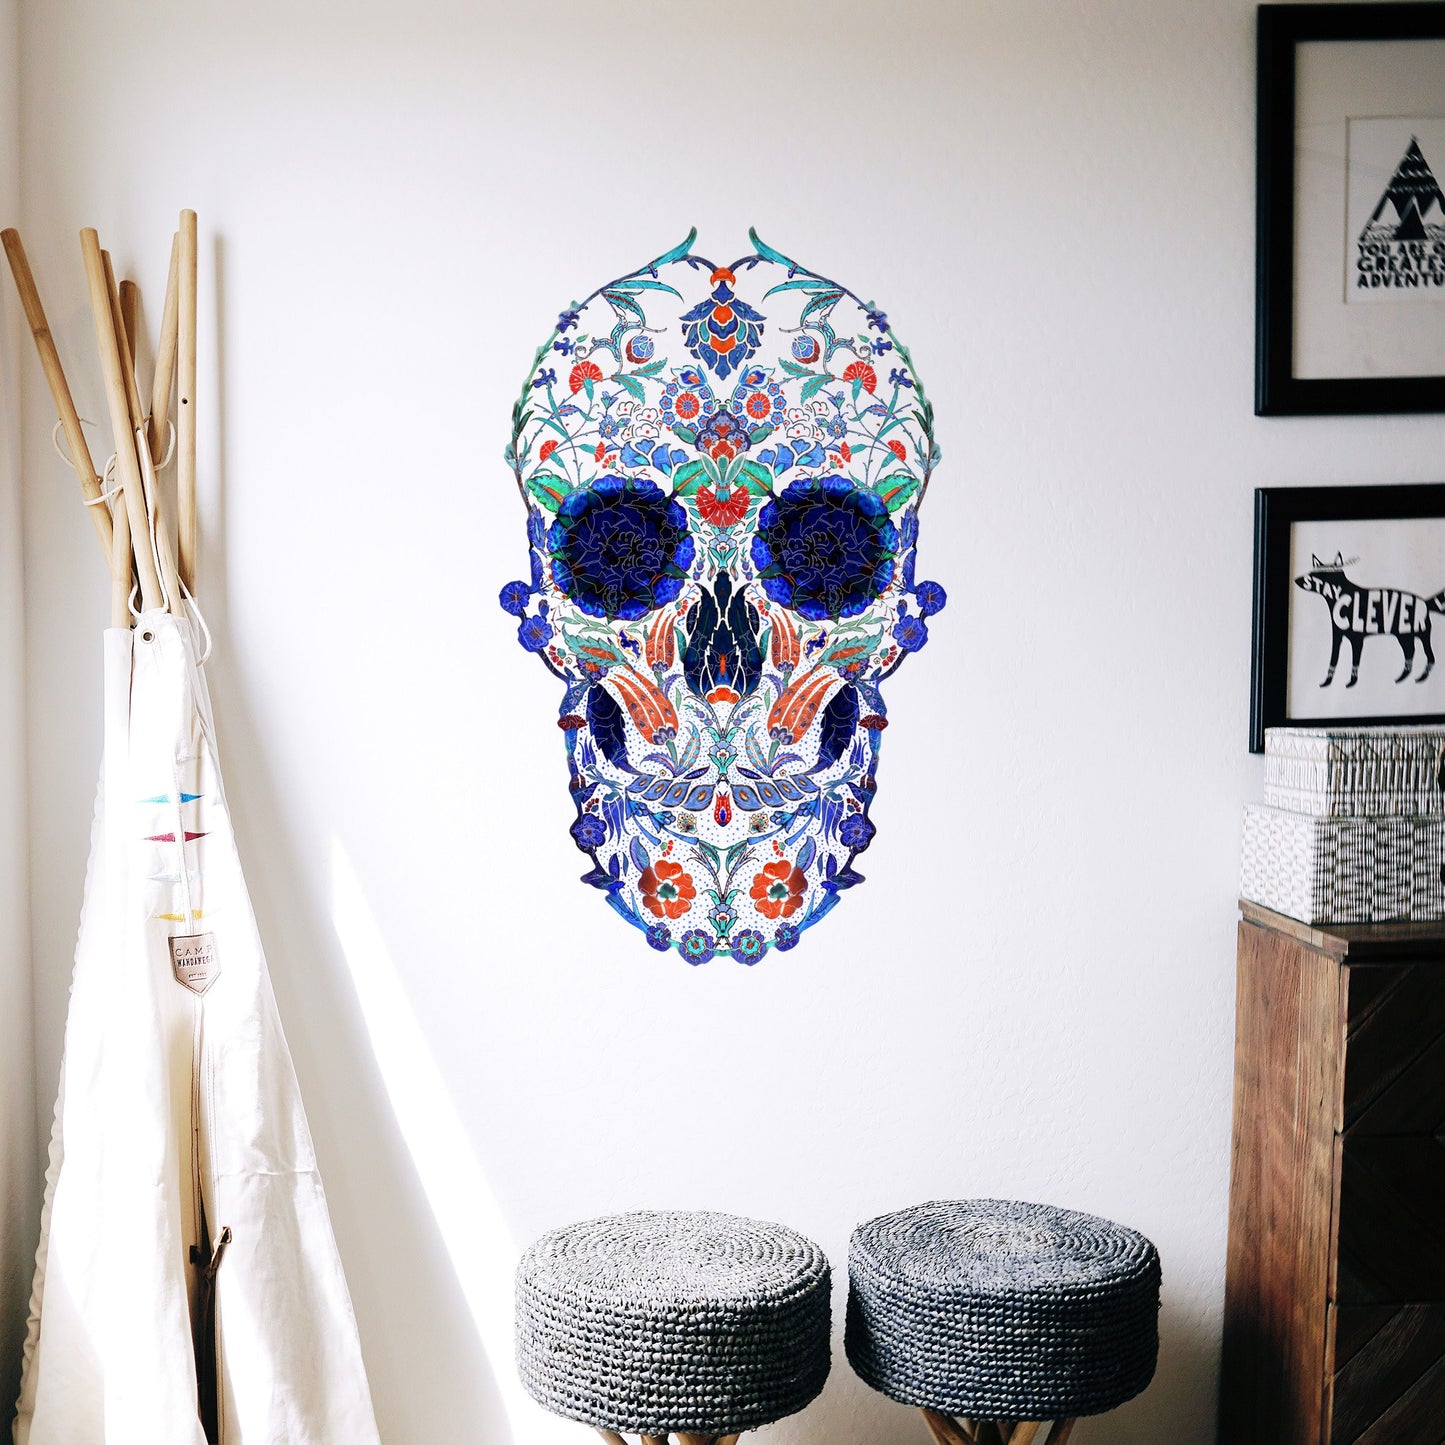 Skull Wall Decal, Boho Skull Wall Sticker, Sugar Skull Art Home Decor, Vinyl Gothic Skull Wall Art Gift, Large Sugar Skull Art Wall Decal